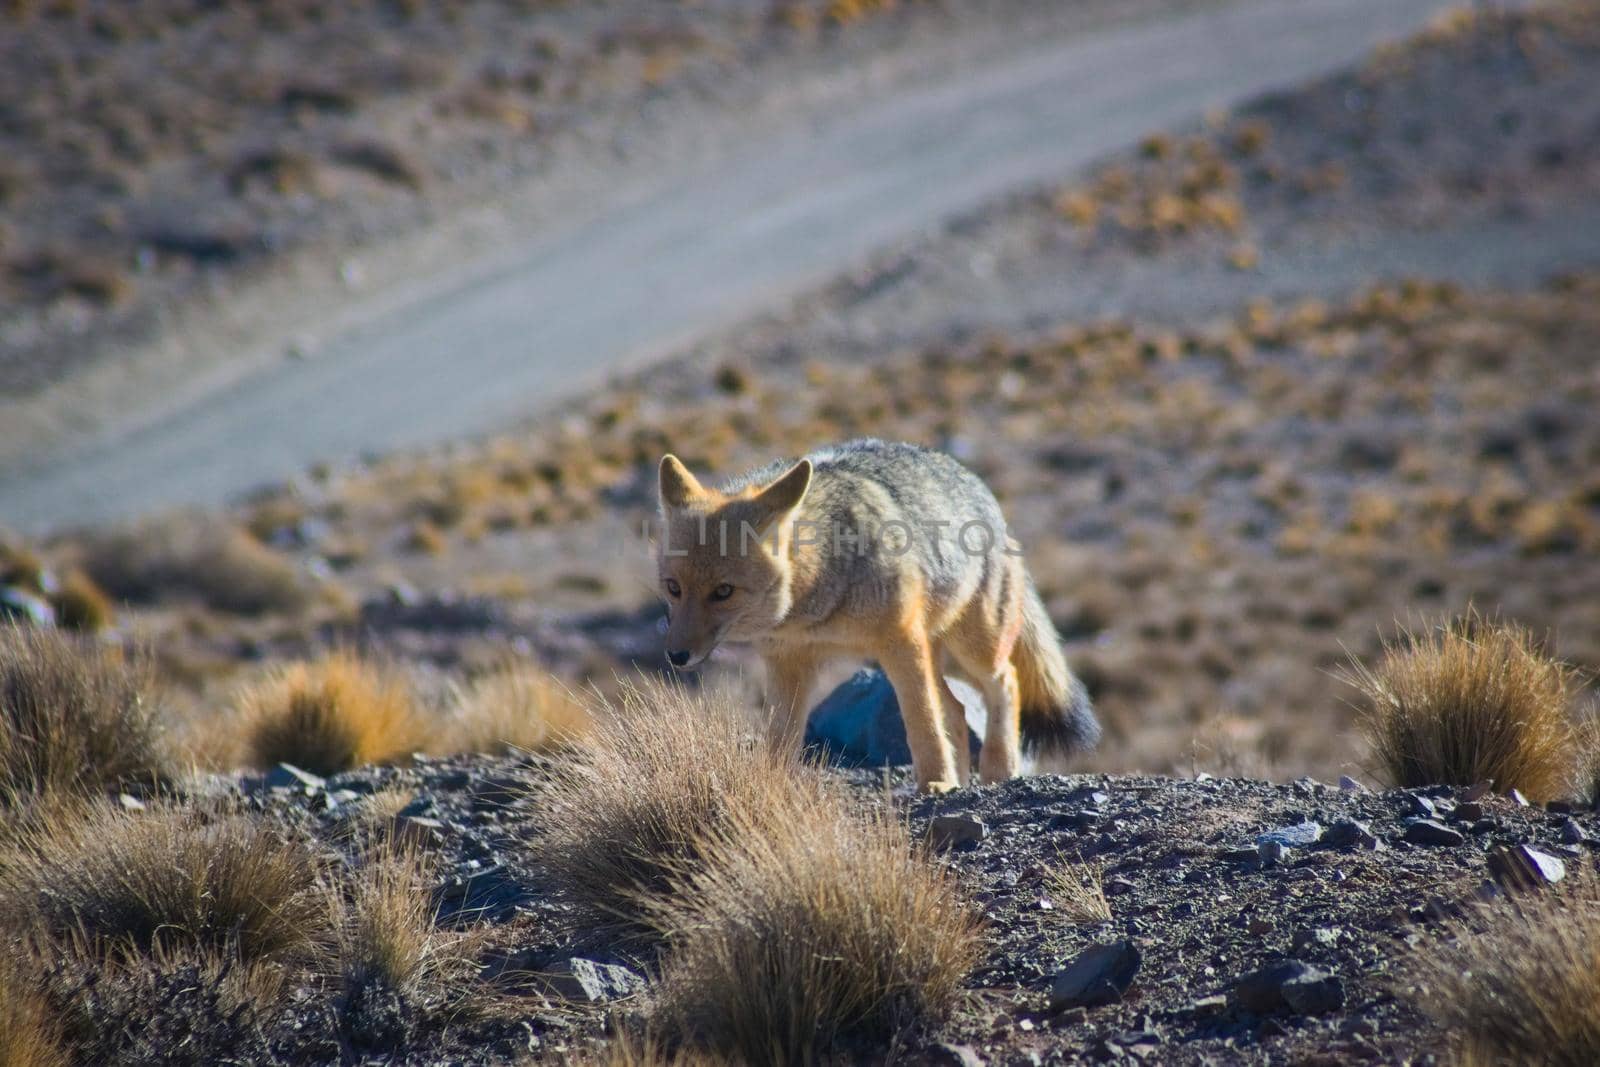 Andean fox, also known as culpeo (Lycalopex culpaeus) spotted in Villavicencio natural reserve, Mendoza, Argentina. by hernan_hyper